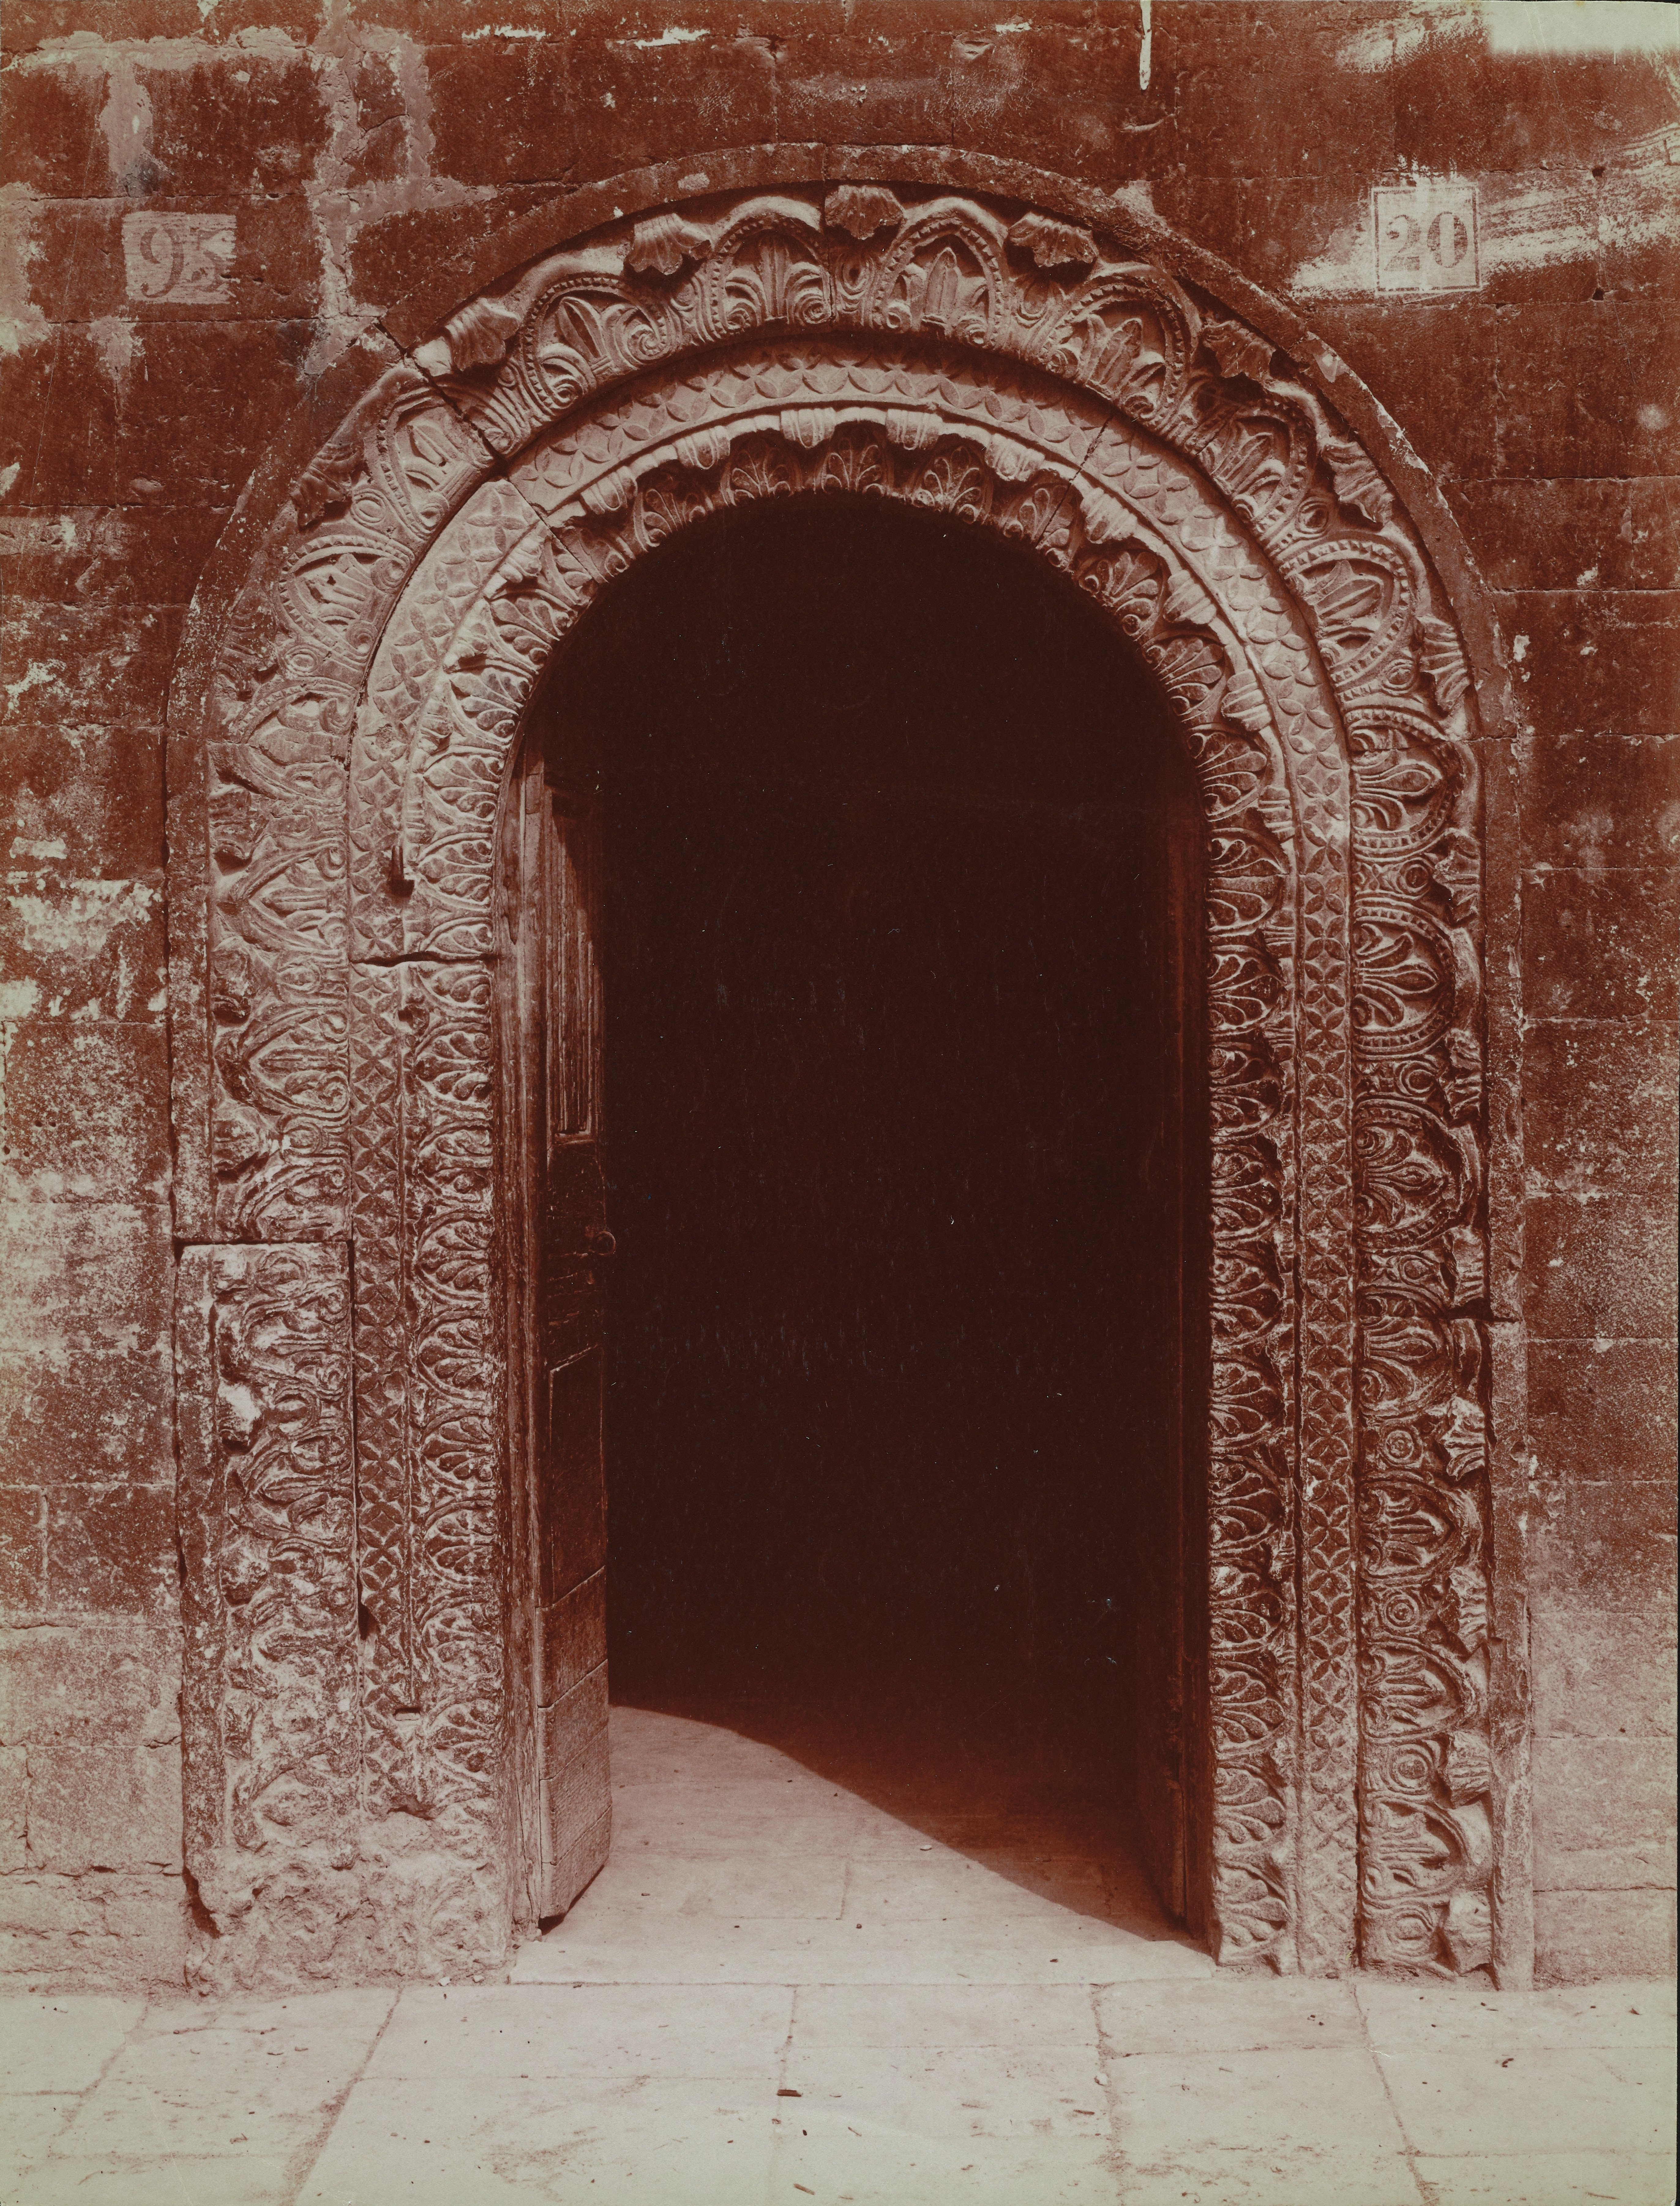 Fotografo non identificato, Ruvo di Puglia - Cattedrale S. Maria Assunta, portale laterale destro, 1901-1910, albumina, MPI6091665